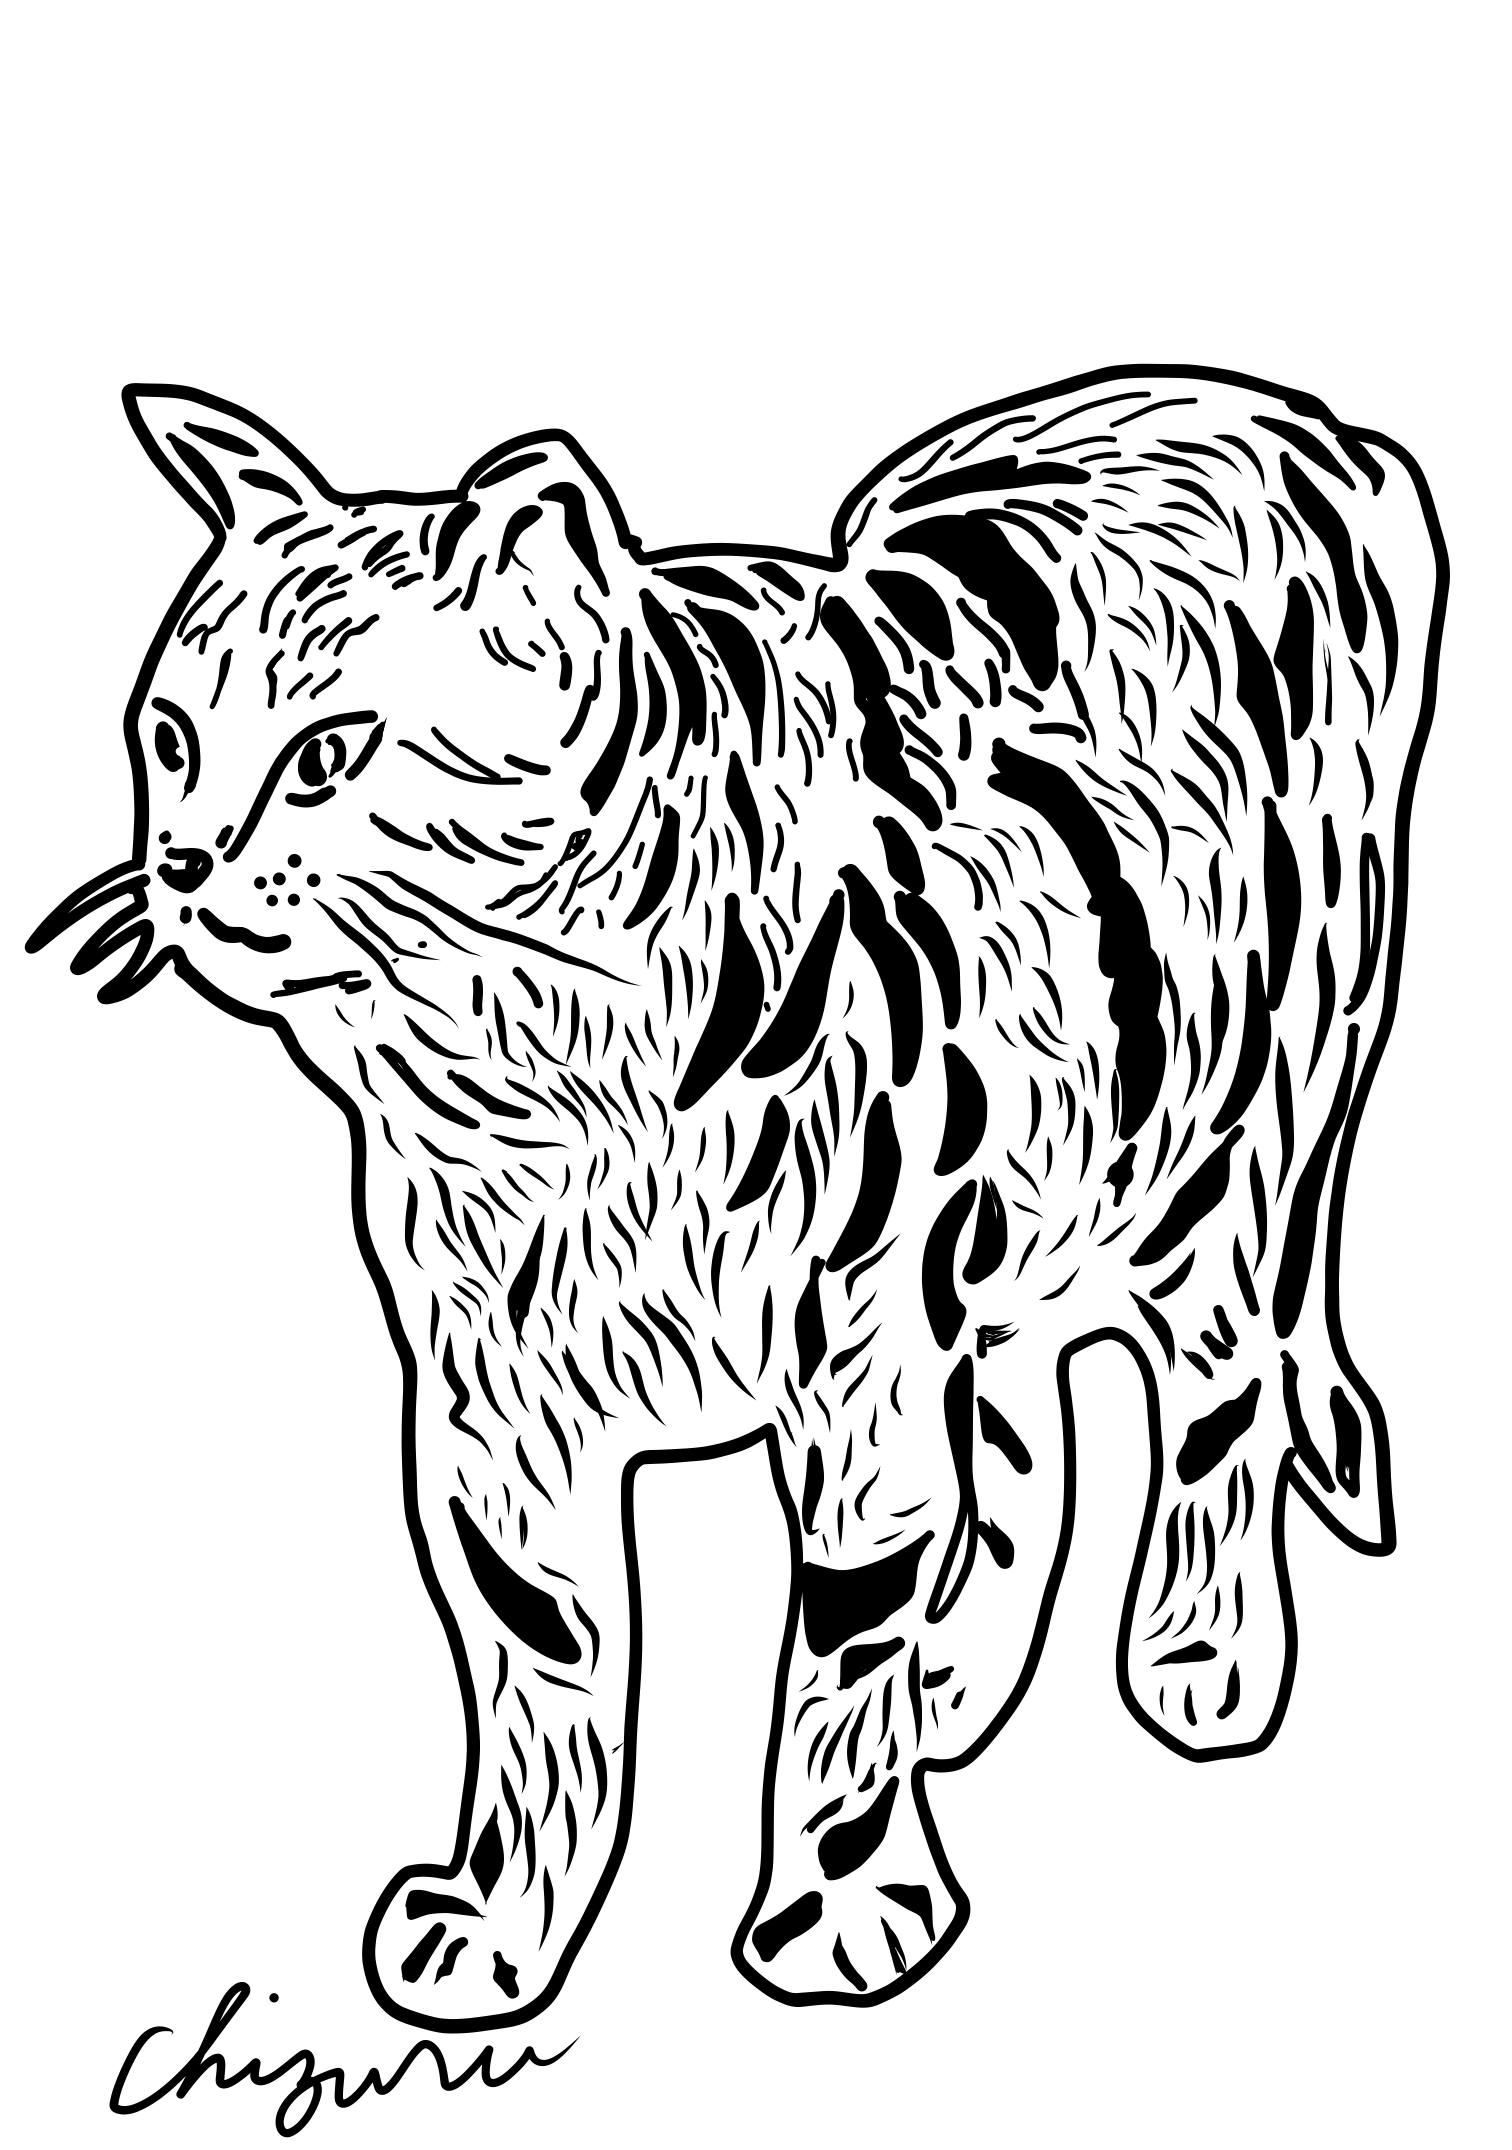 【切り絵スターターキット】猫の切り絵セットを使って気軽に切り絵を始めてみませんか。